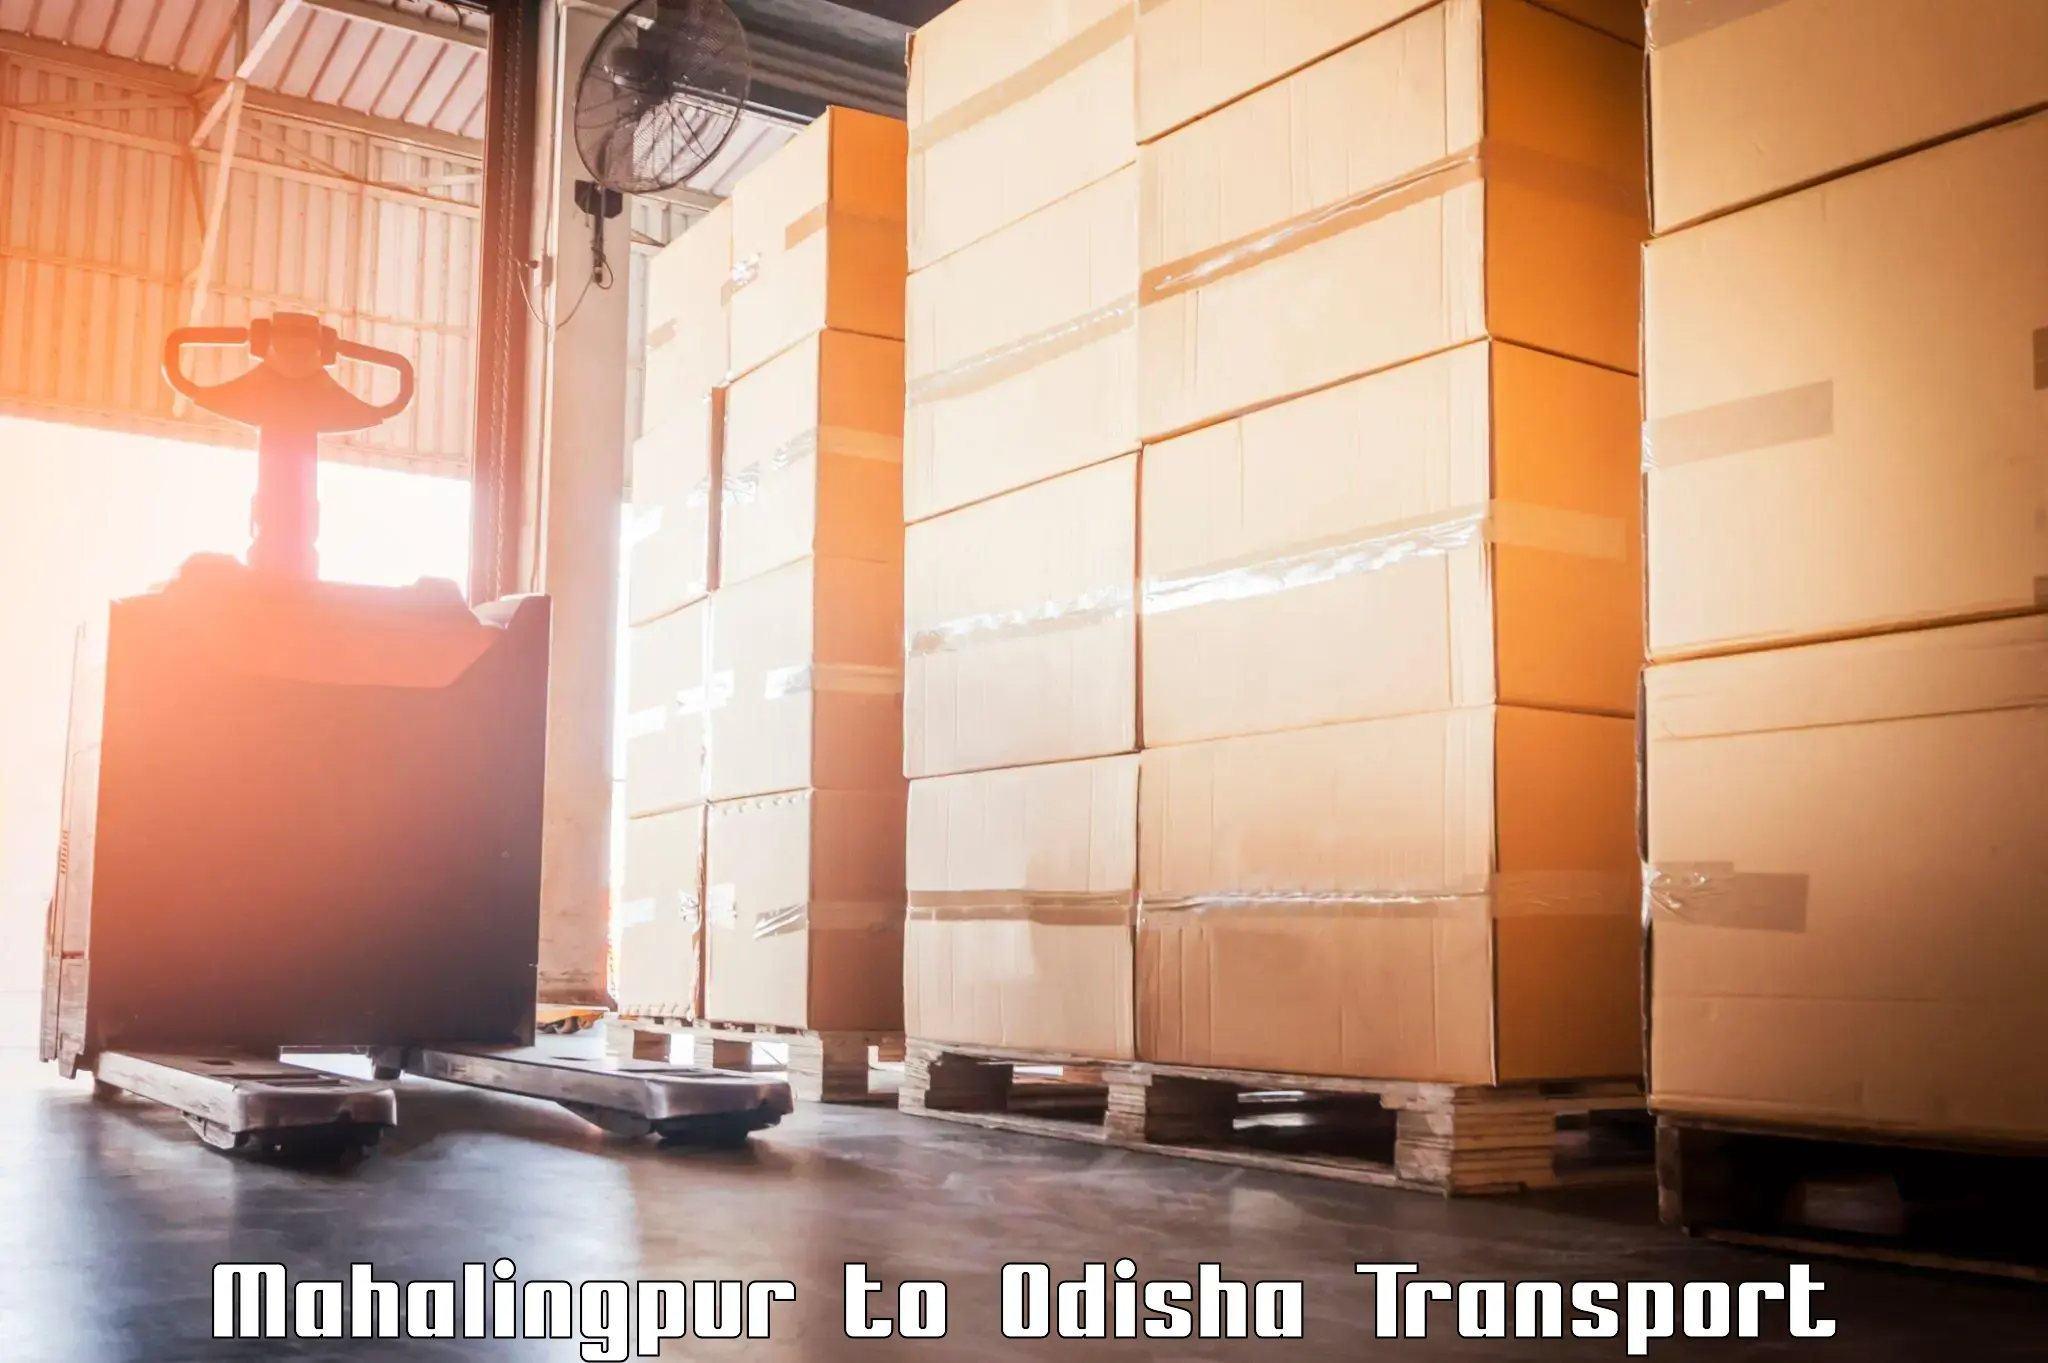 India truck logistics services Mahalingpur to Nayagarh